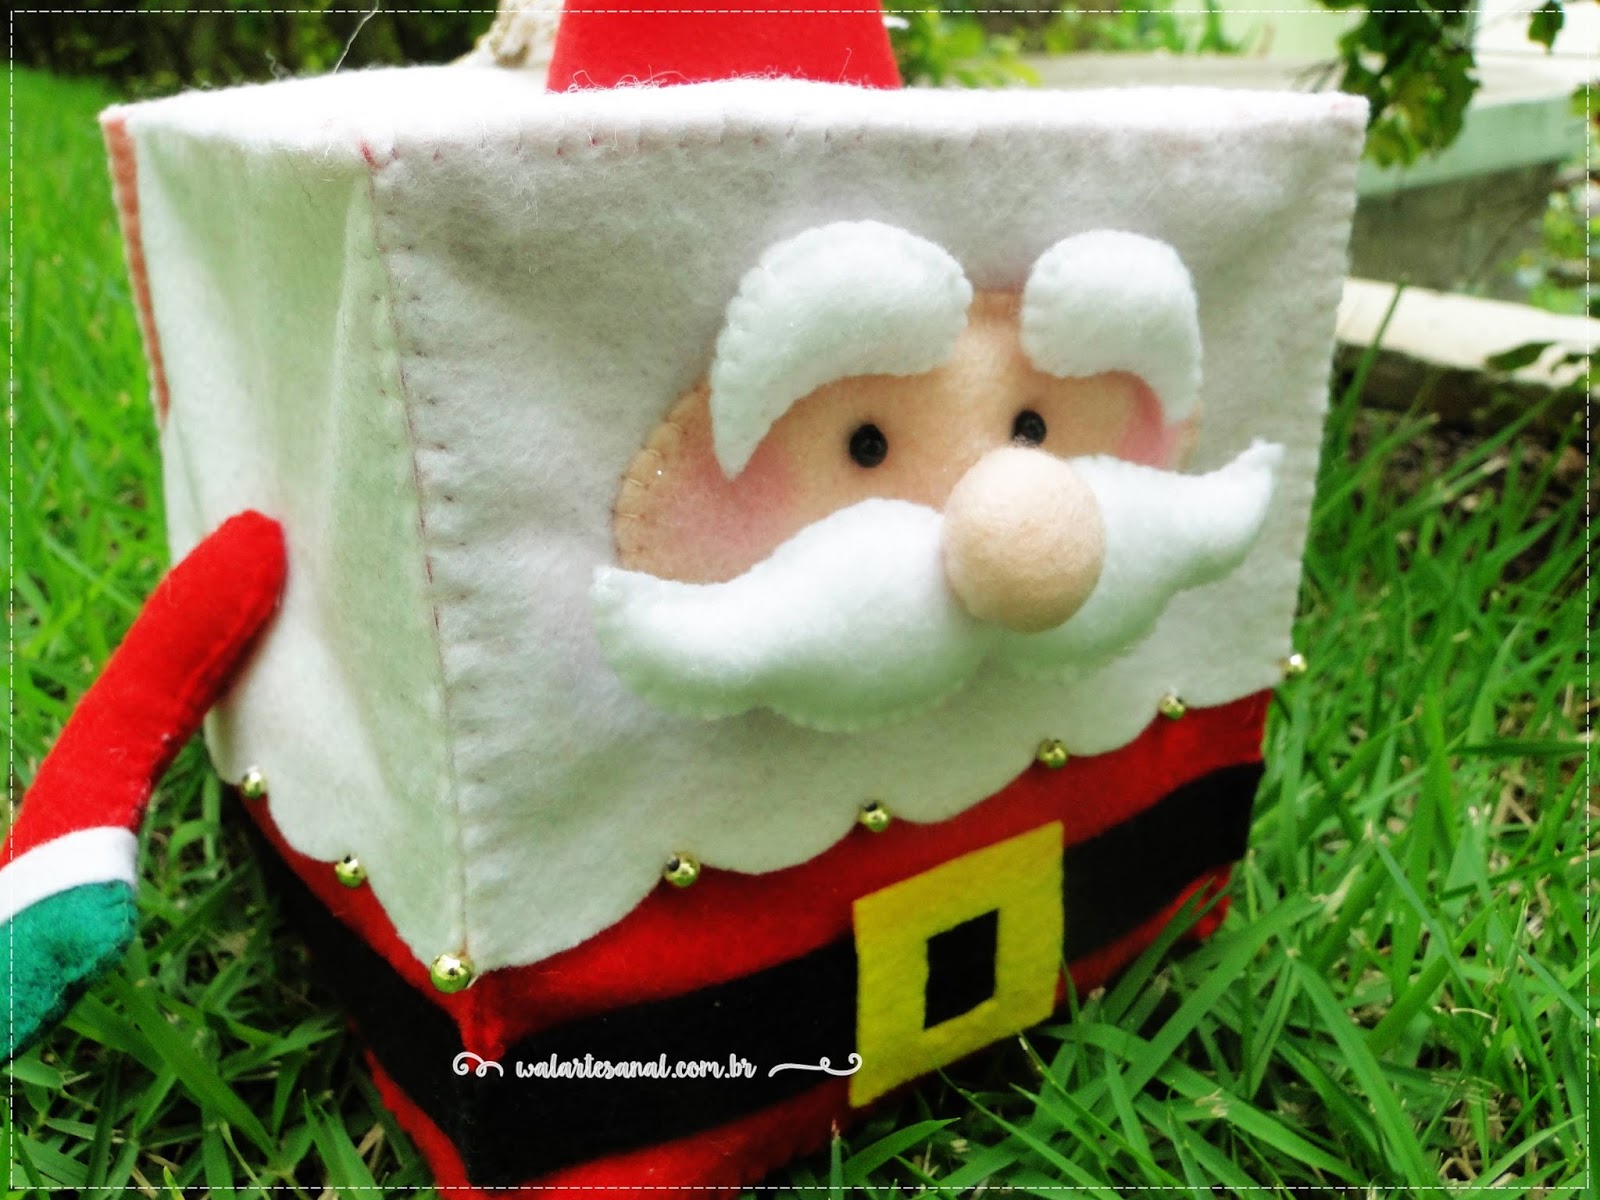 Wal Artesanal: Feliz Natal - Ho Ho Ho *-*